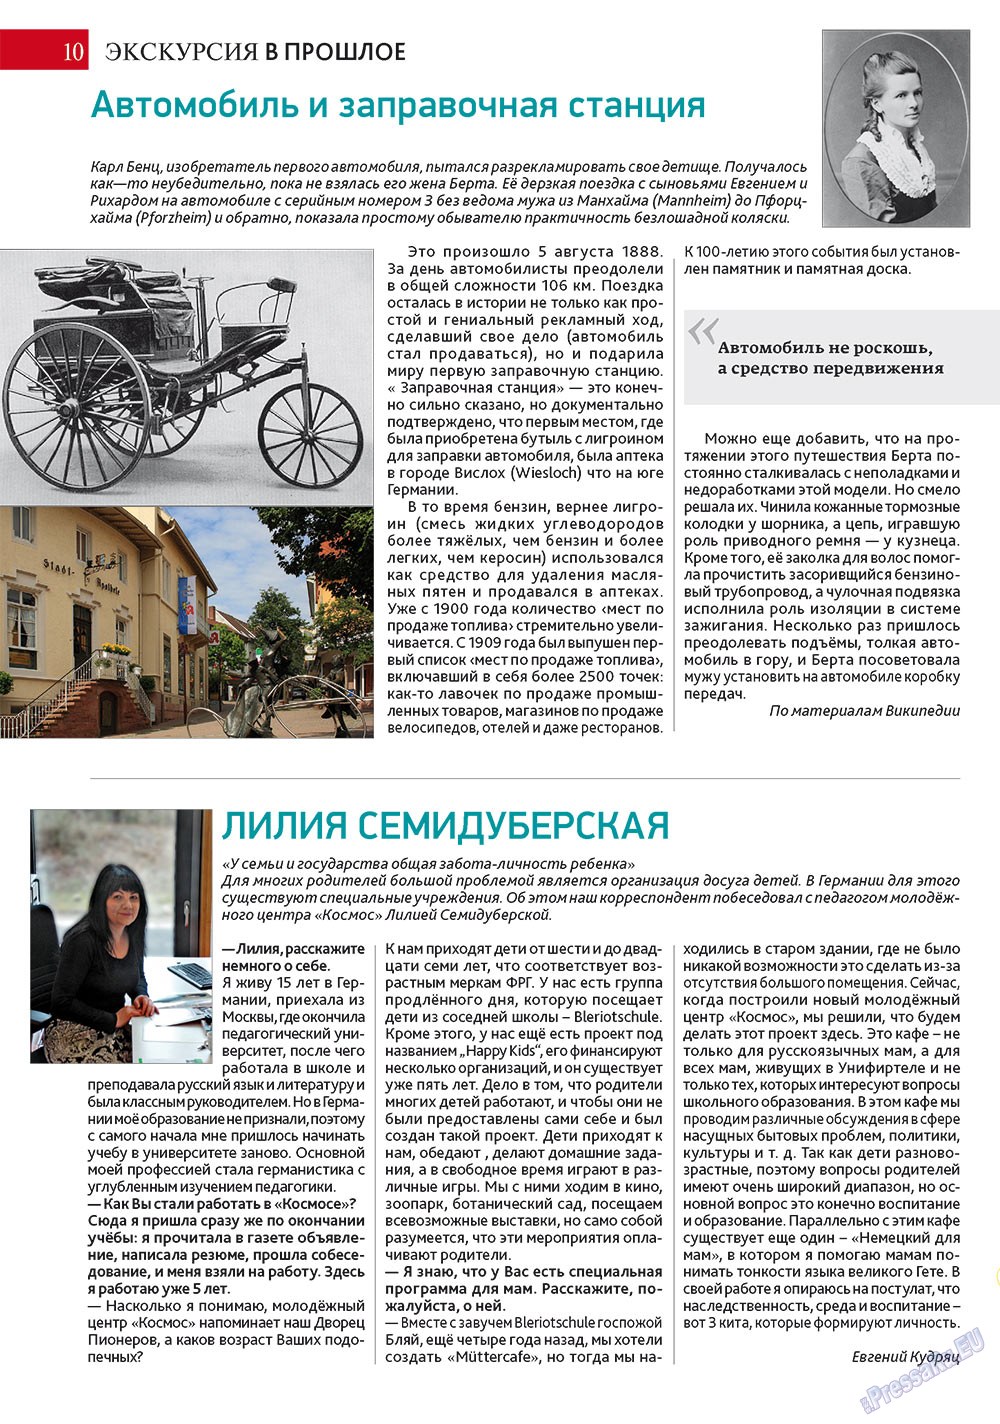 Афиша Augsburg (журнал). 2012 год, номер 4, стр. 10